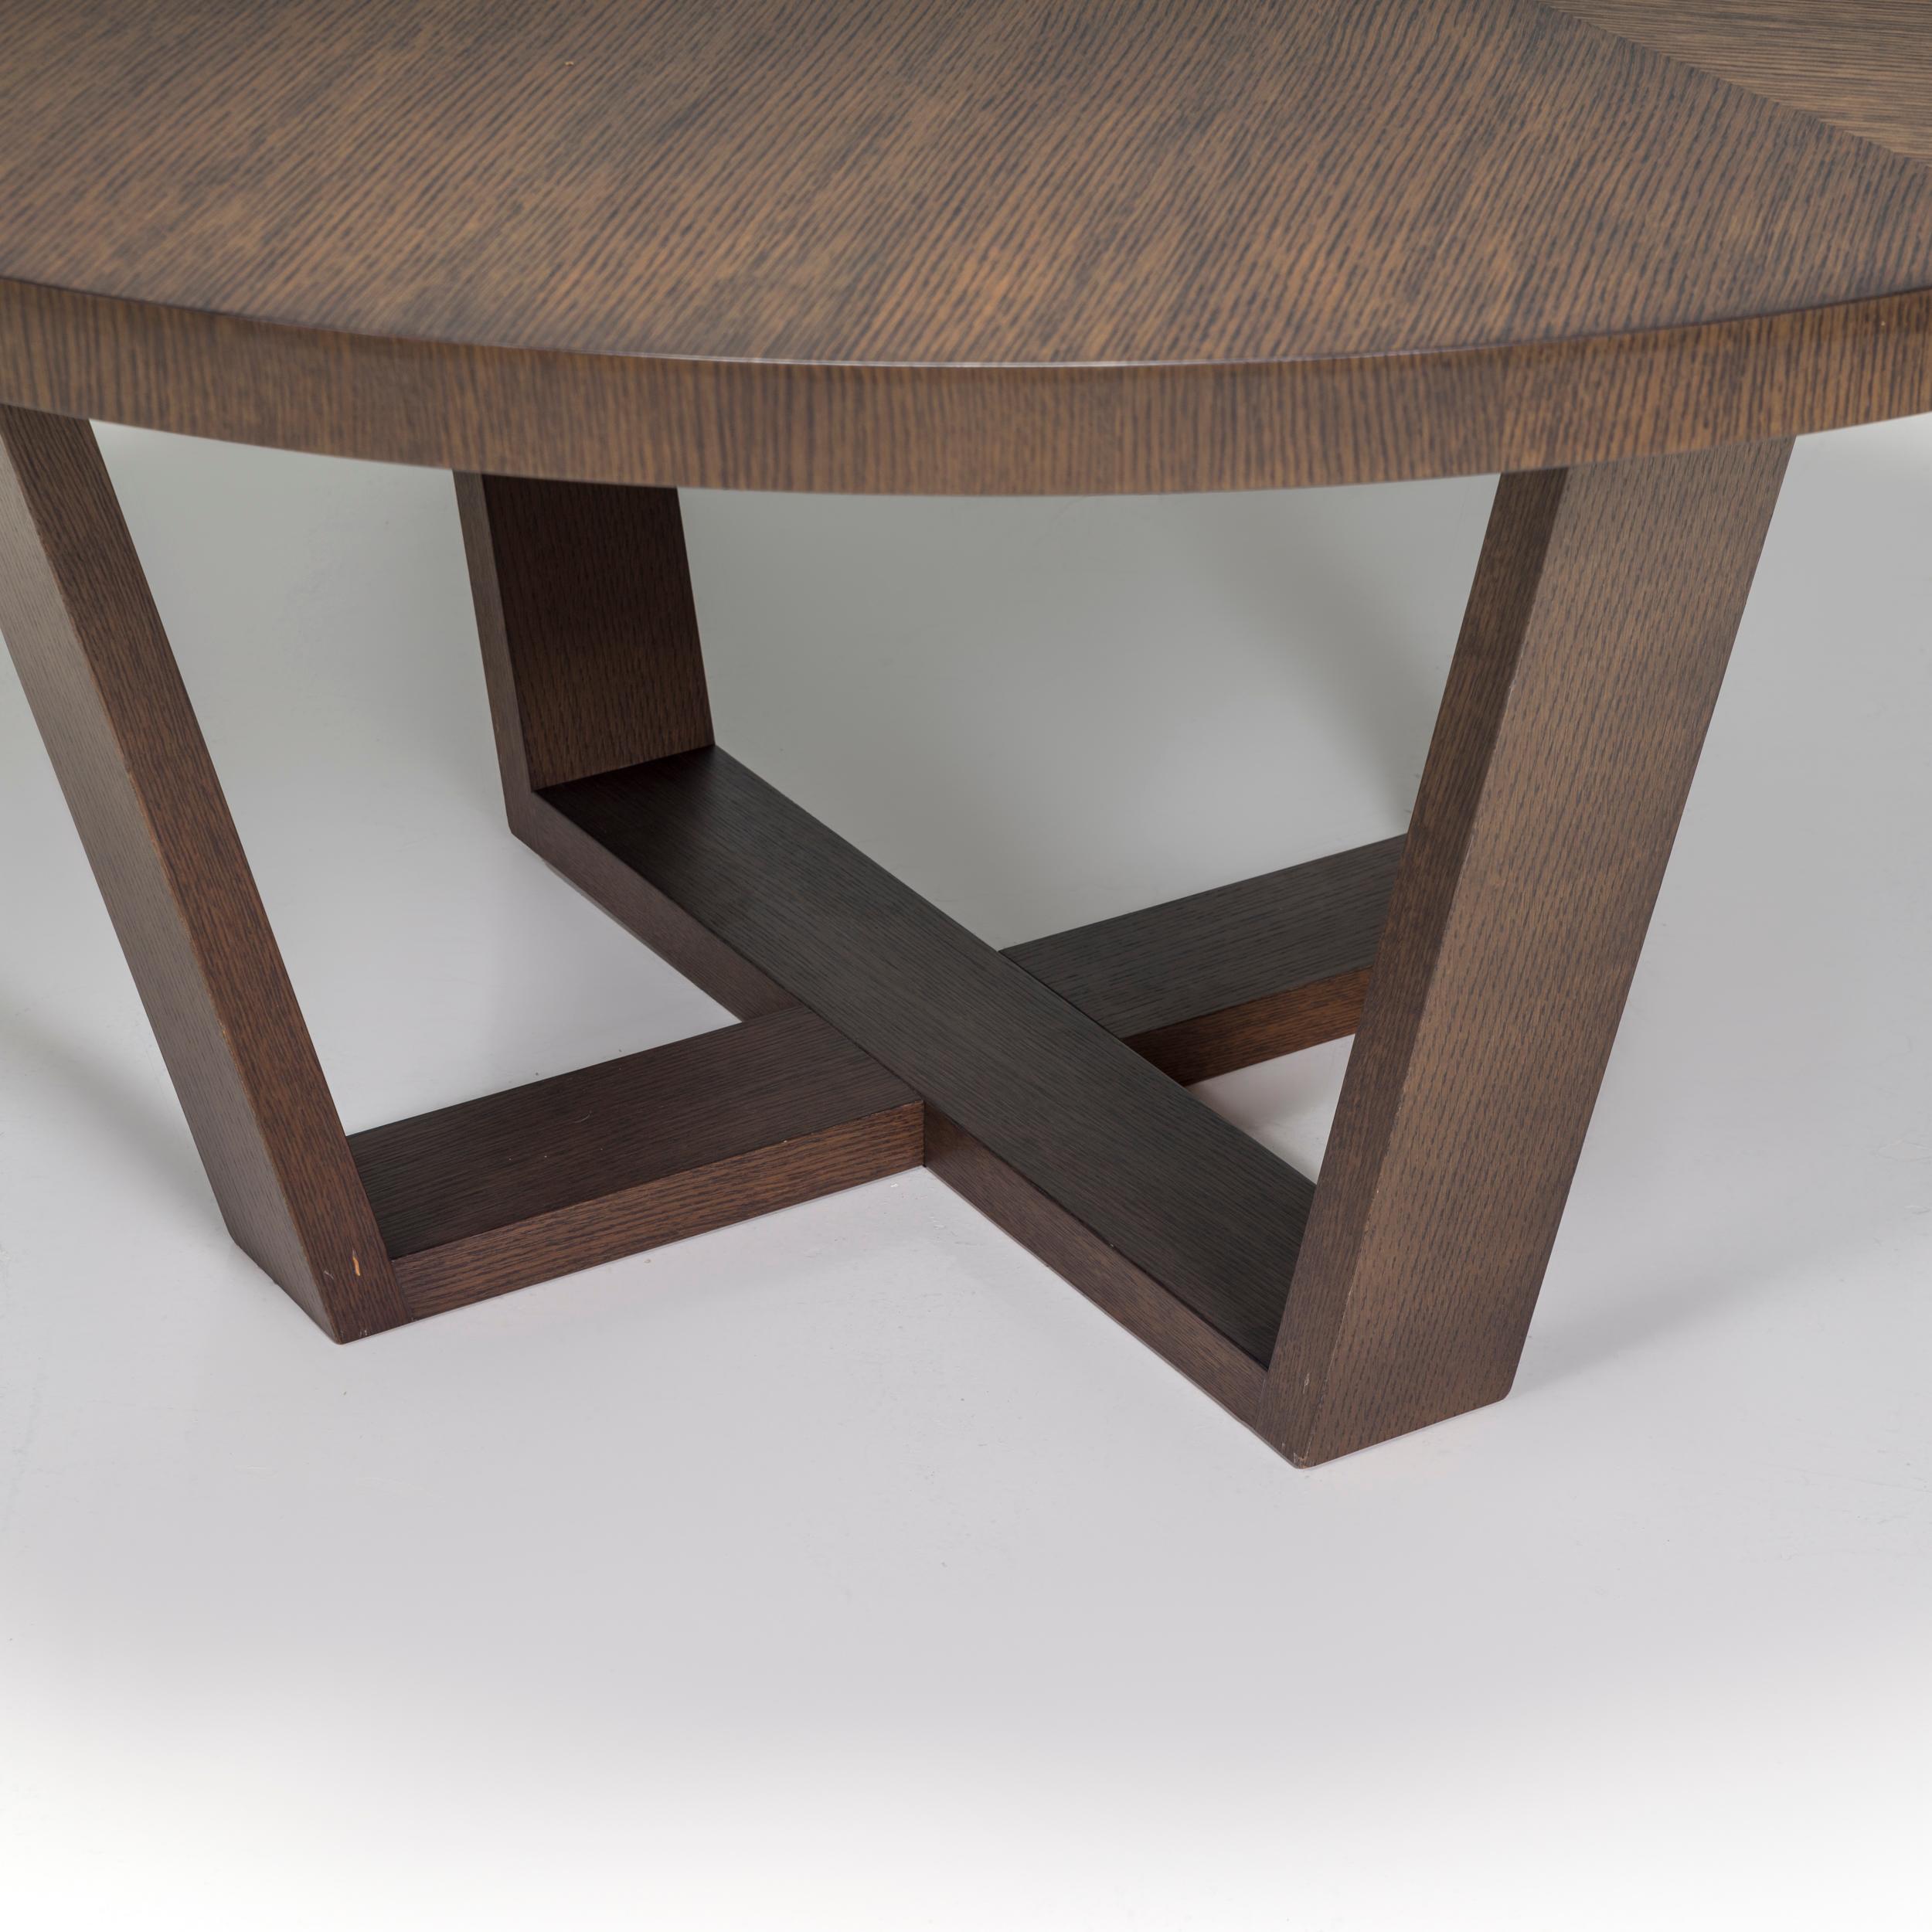 Conçue à l'origine par Antonio Citterio en 2012 pour sa Collection Maxalto Simplice, la table à manger Xilos est un fantastique exemple de design italien contemporain.

Fabriquée en chêne gris, la table présente un grand plateau rond reposant sur un